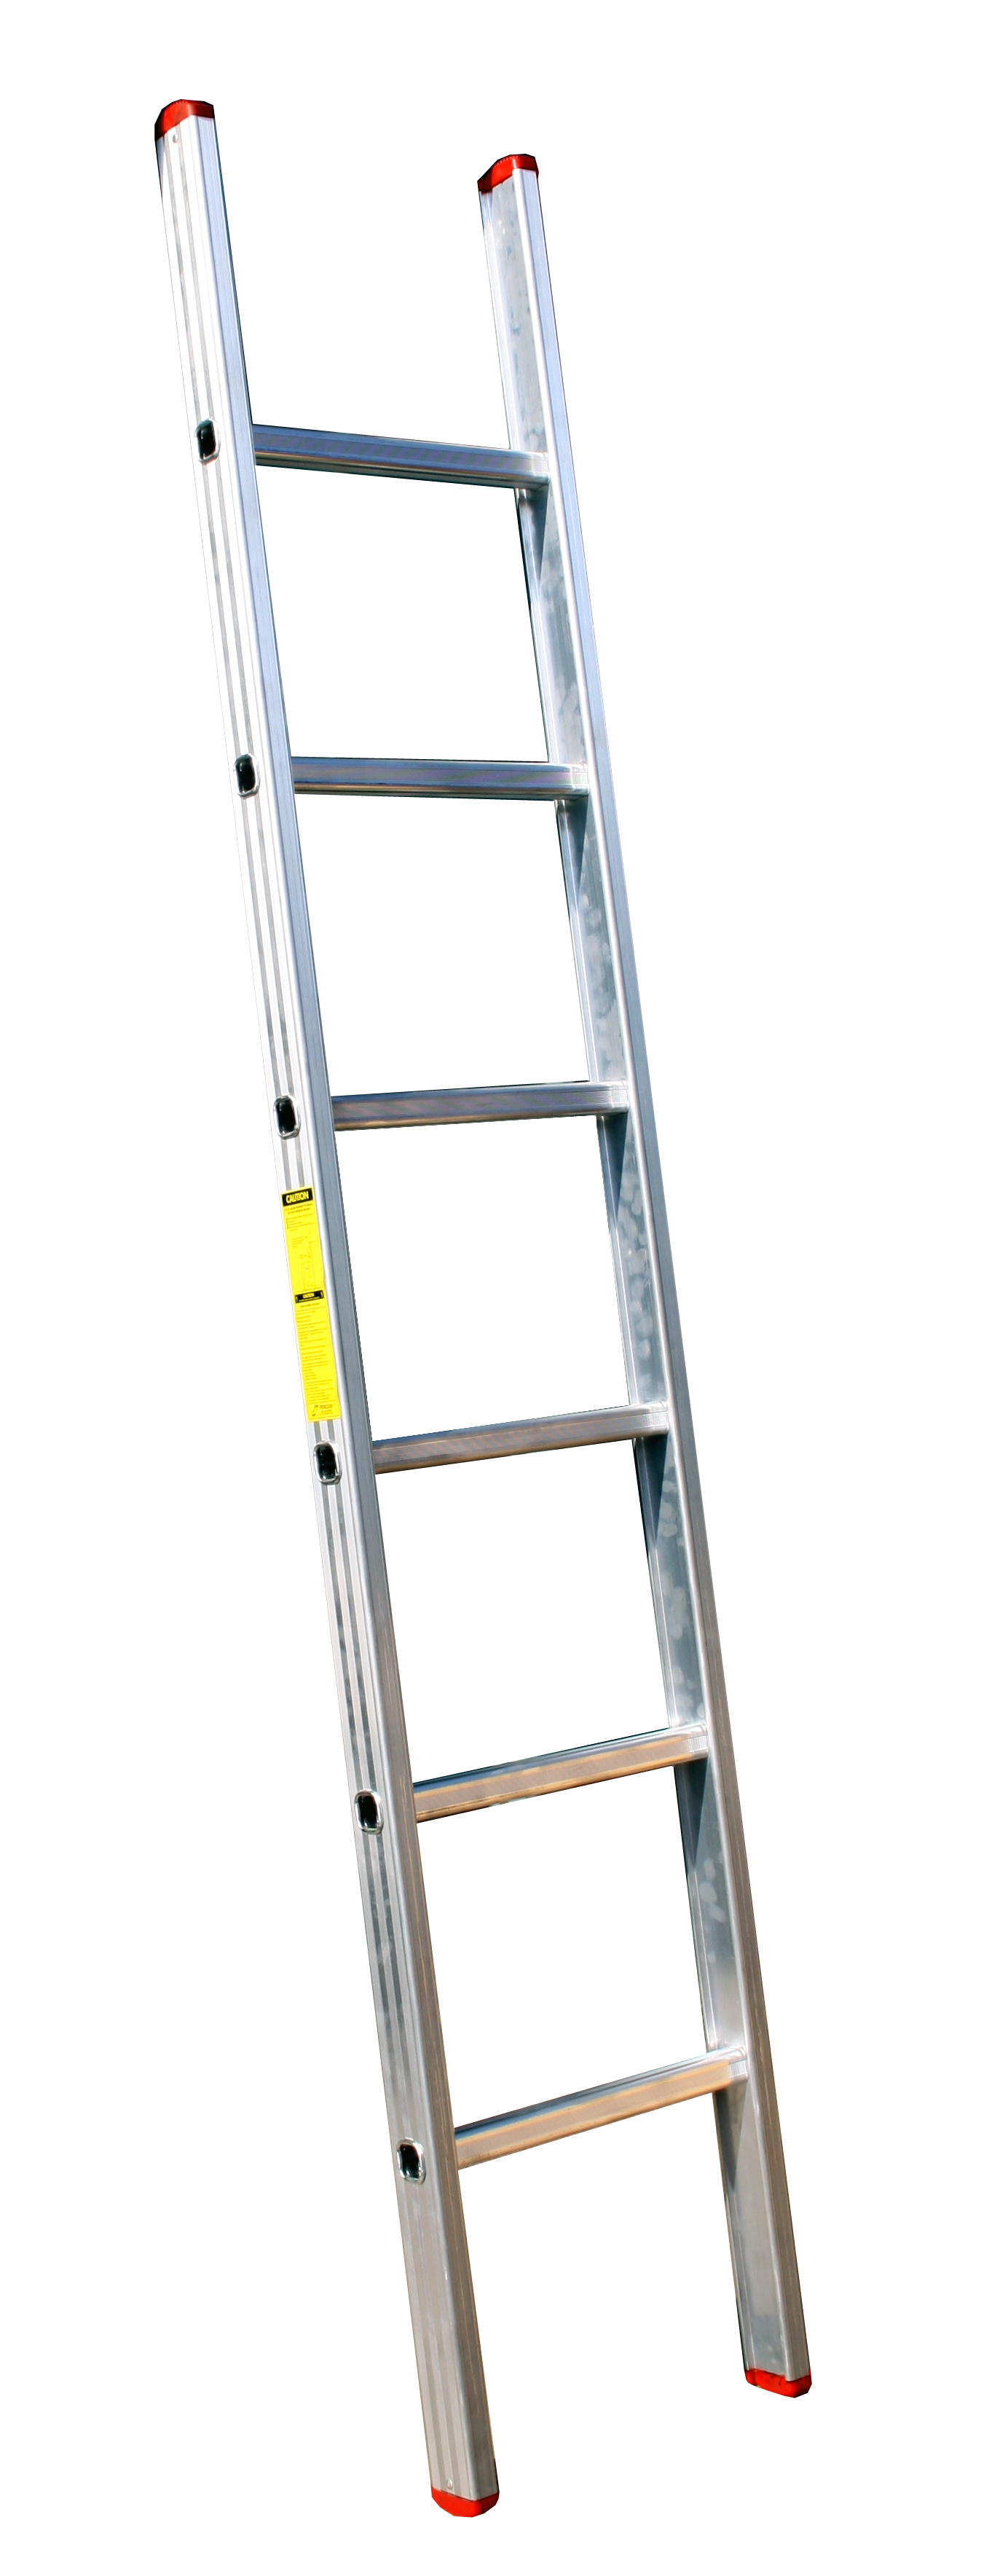 Full-Straight Ladder.jpg